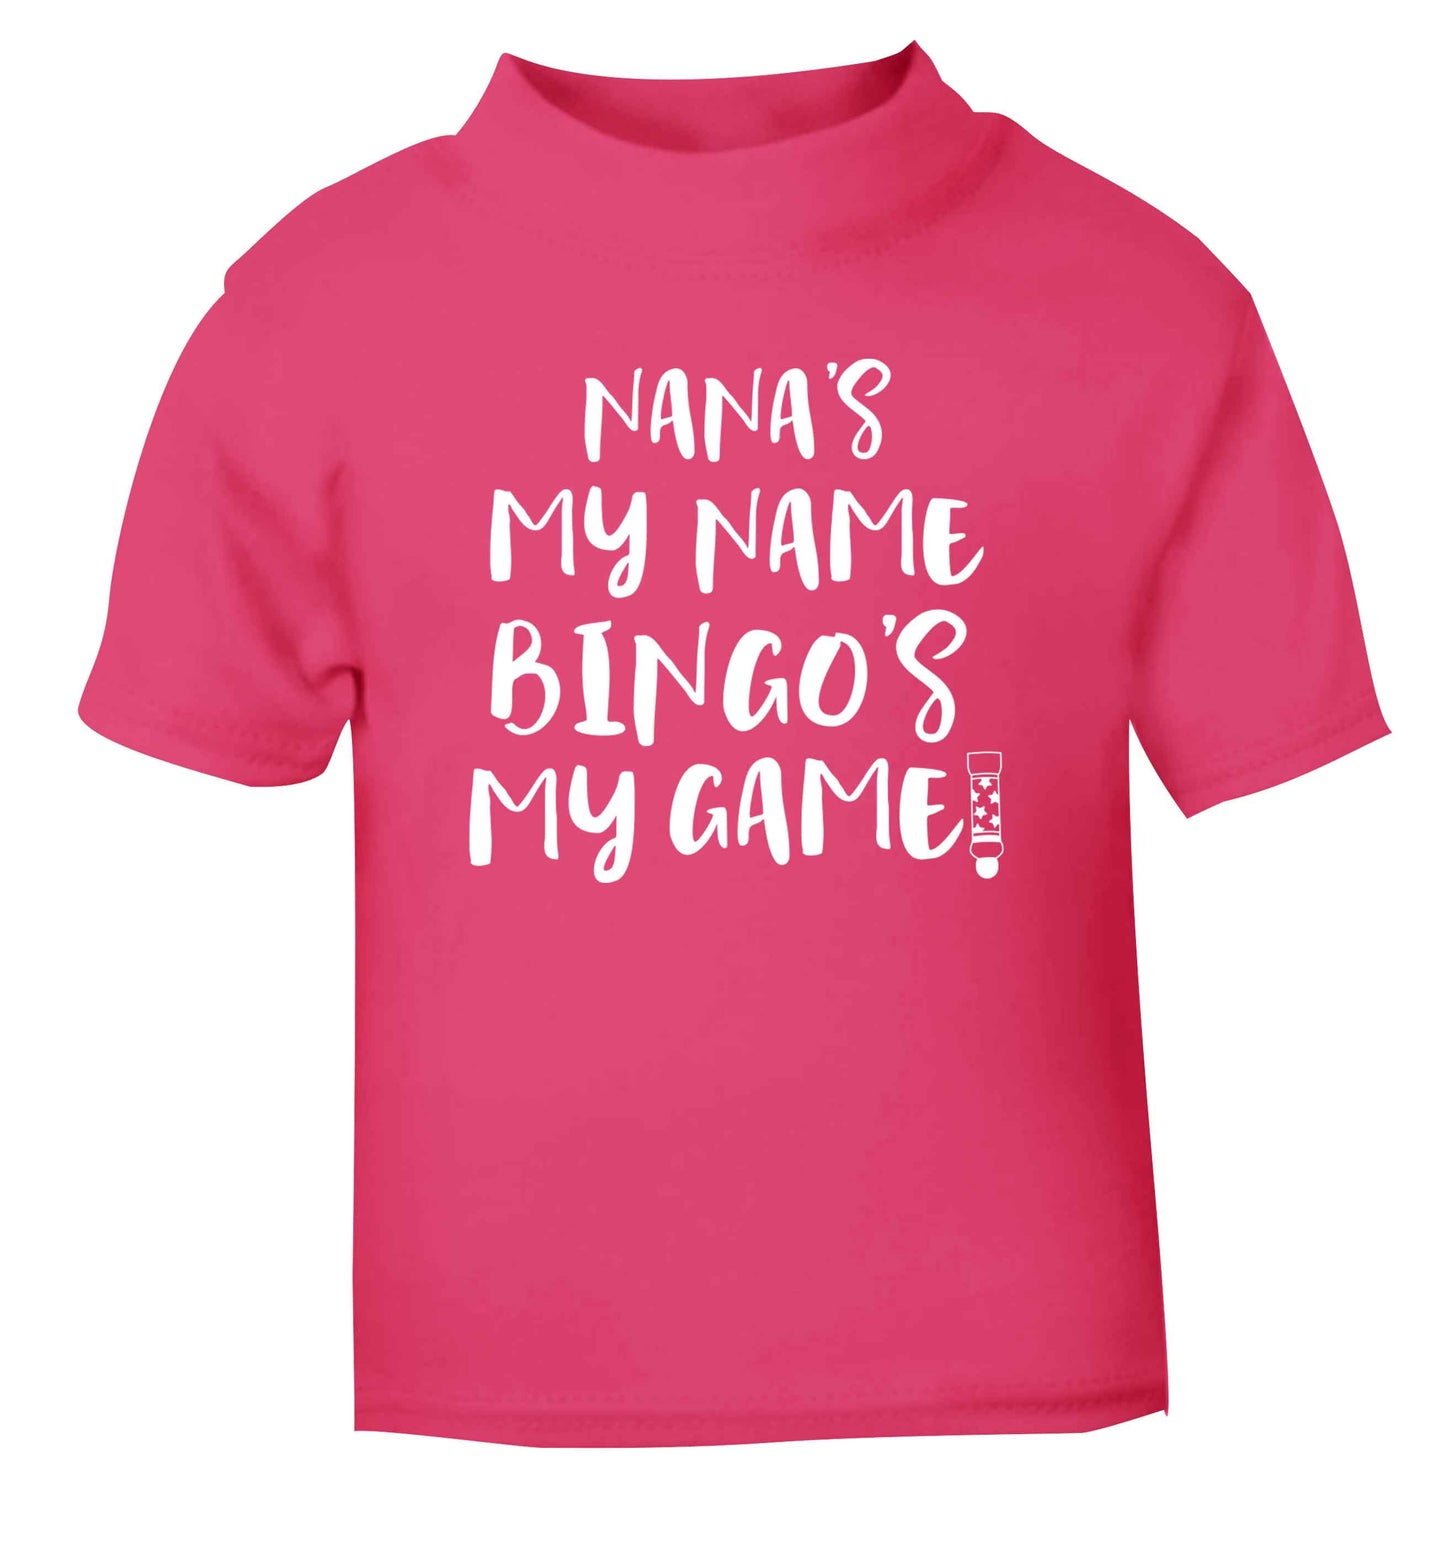 Nana's my name bingo's my game! pink Baby Toddler Tshirt 2 Years